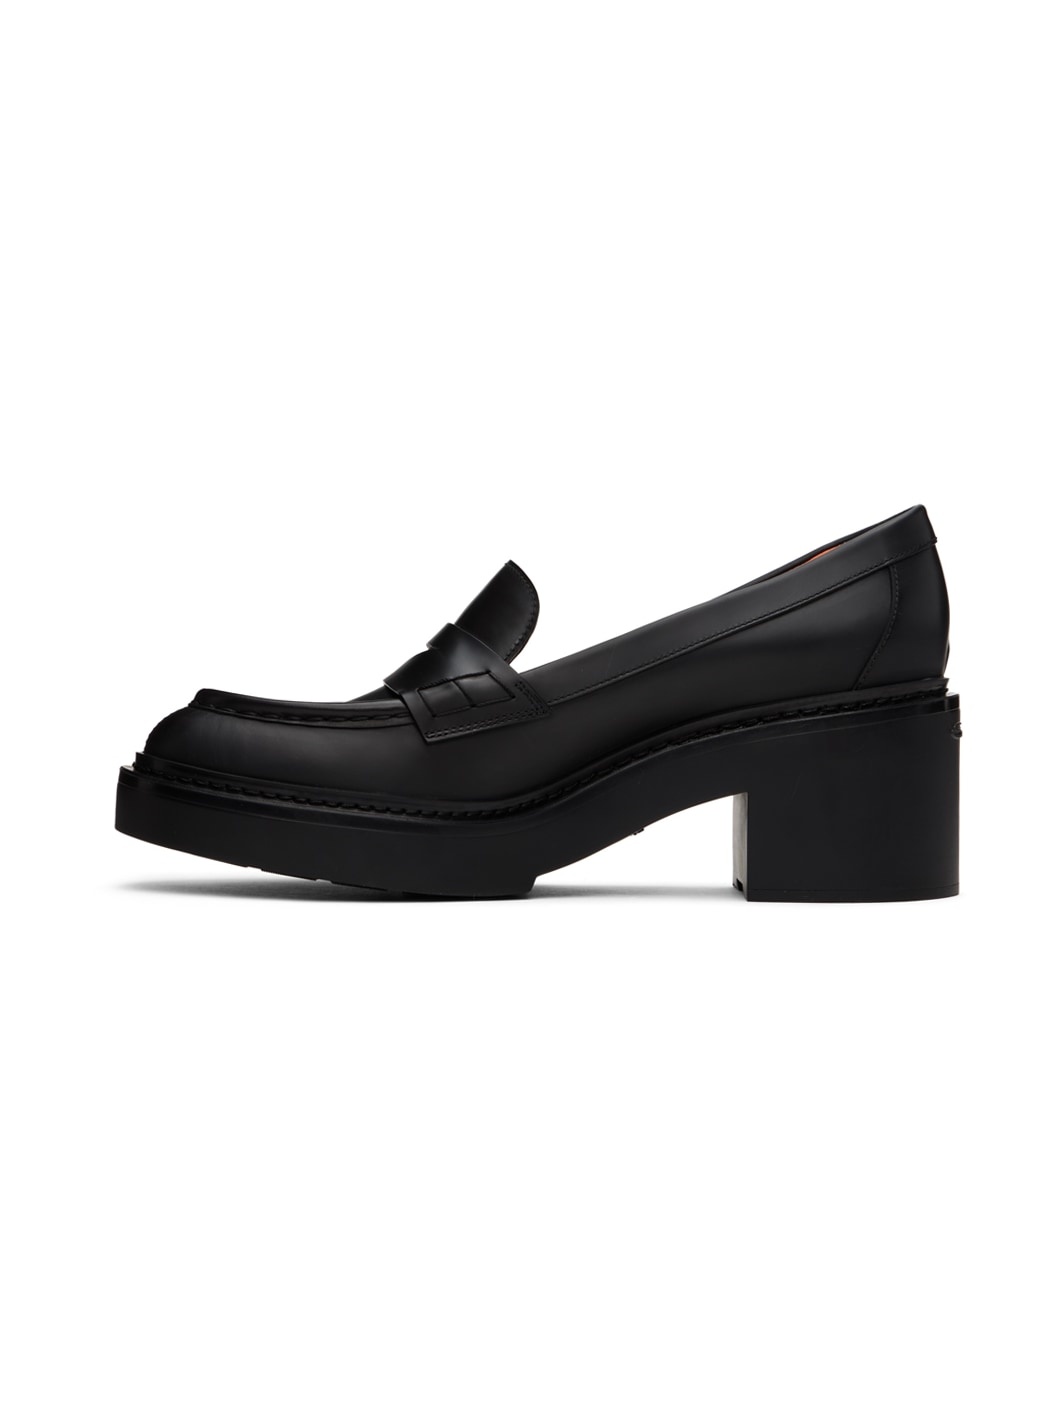 Black Loafer Heels - 3